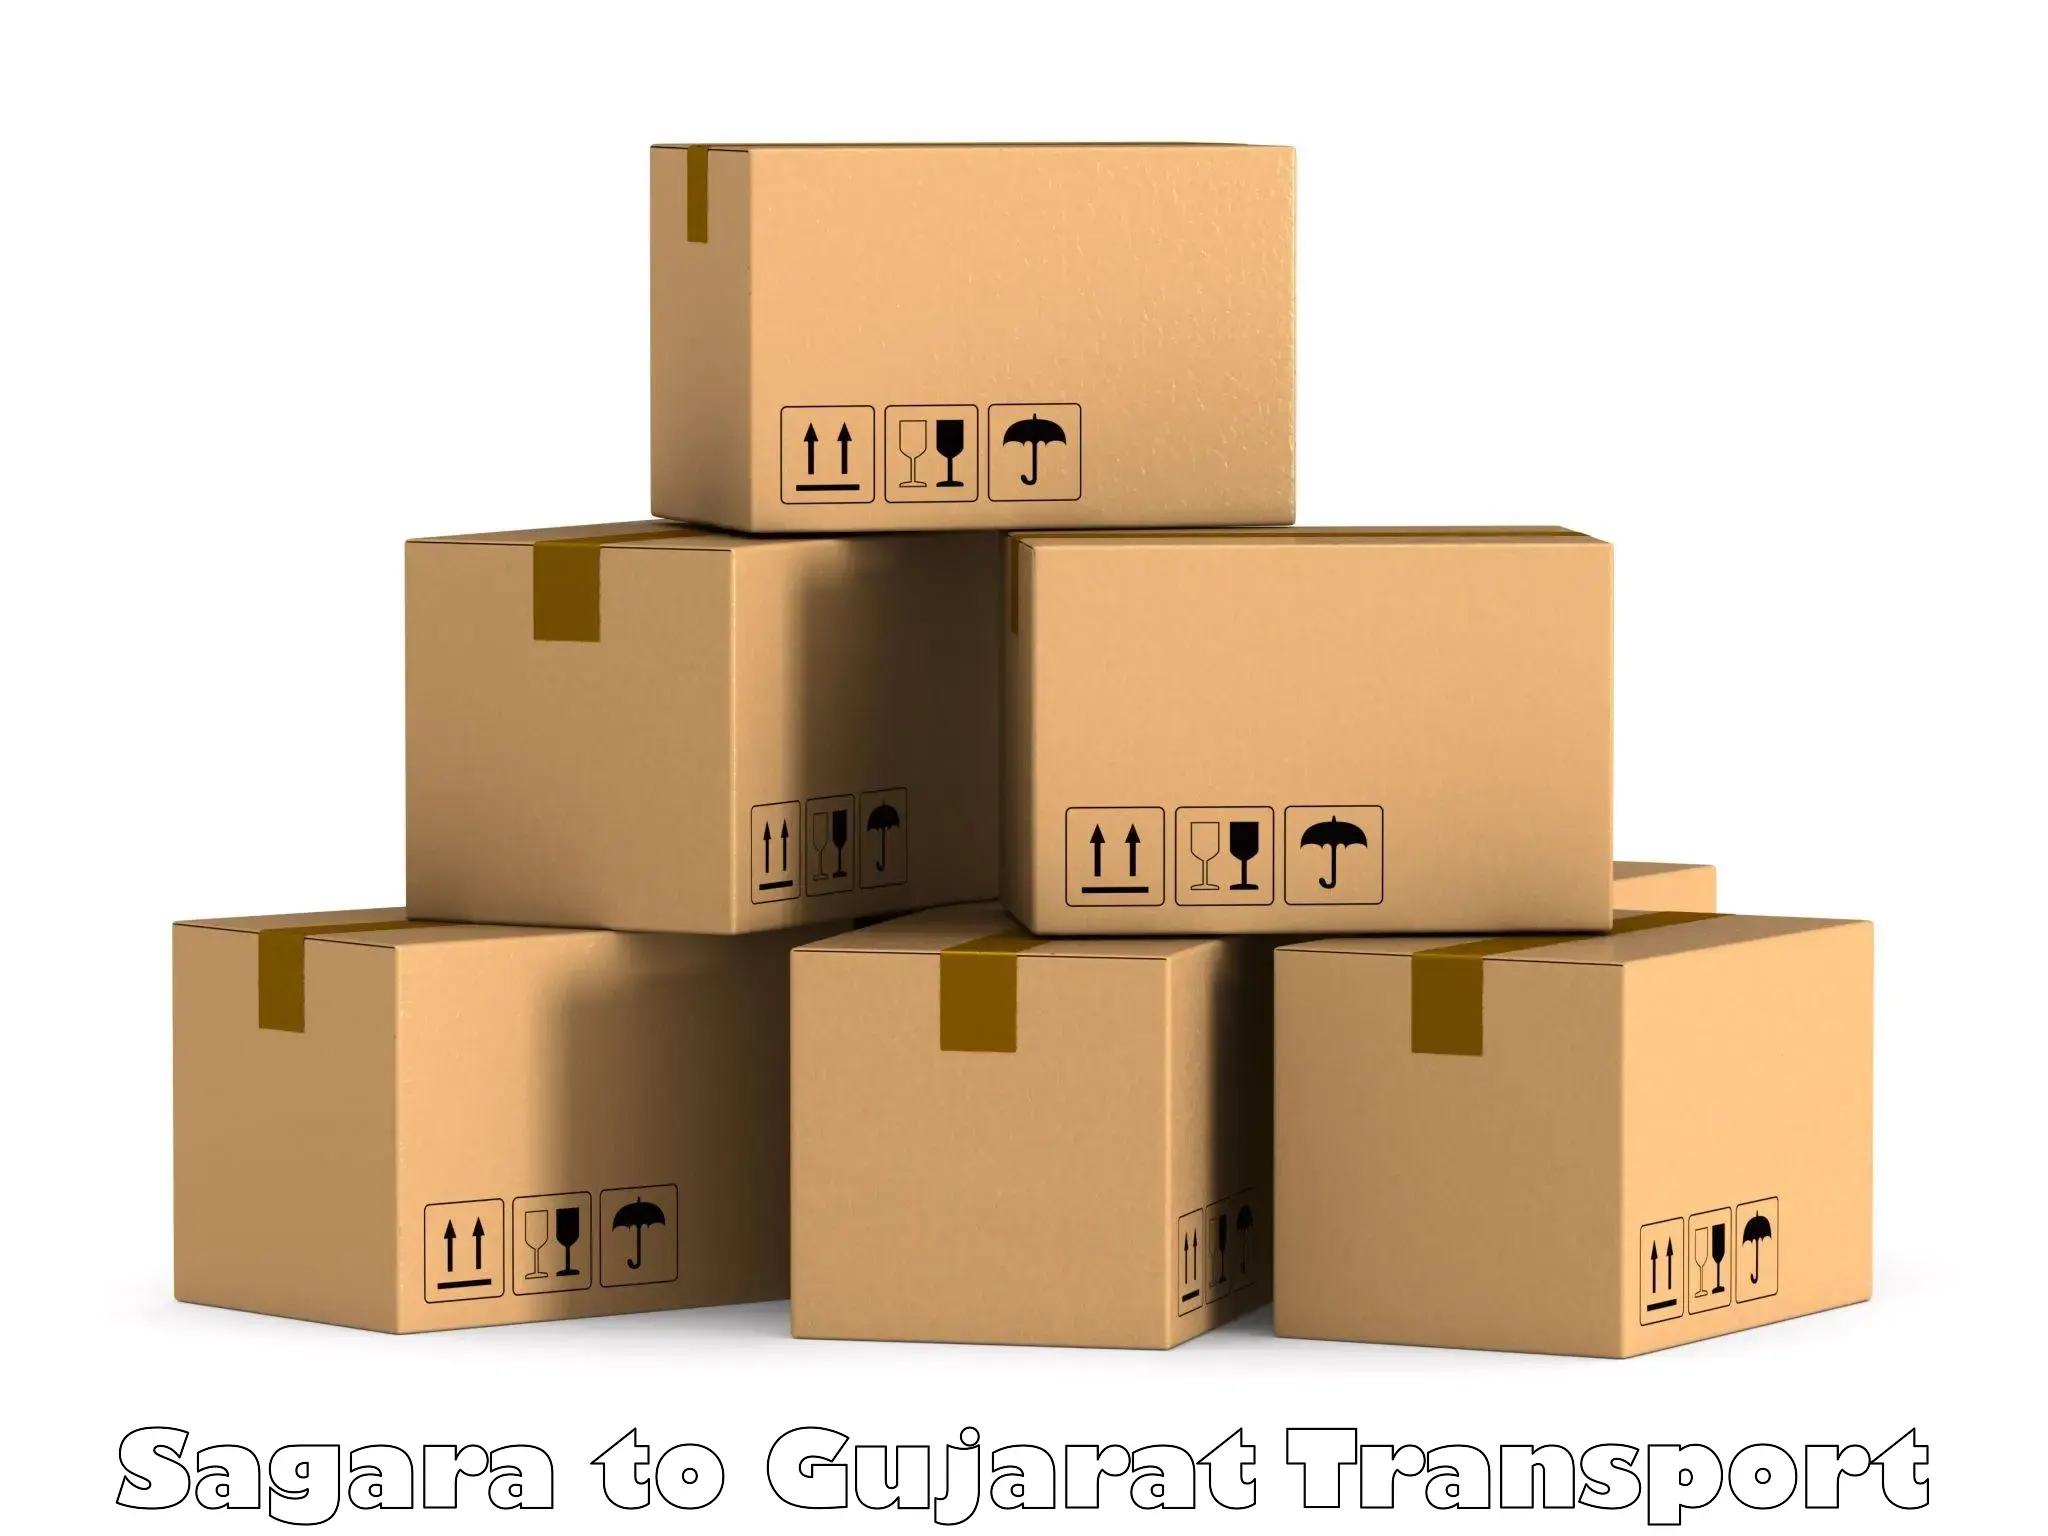 Furniture transport service Sagara to Patan Gujarat